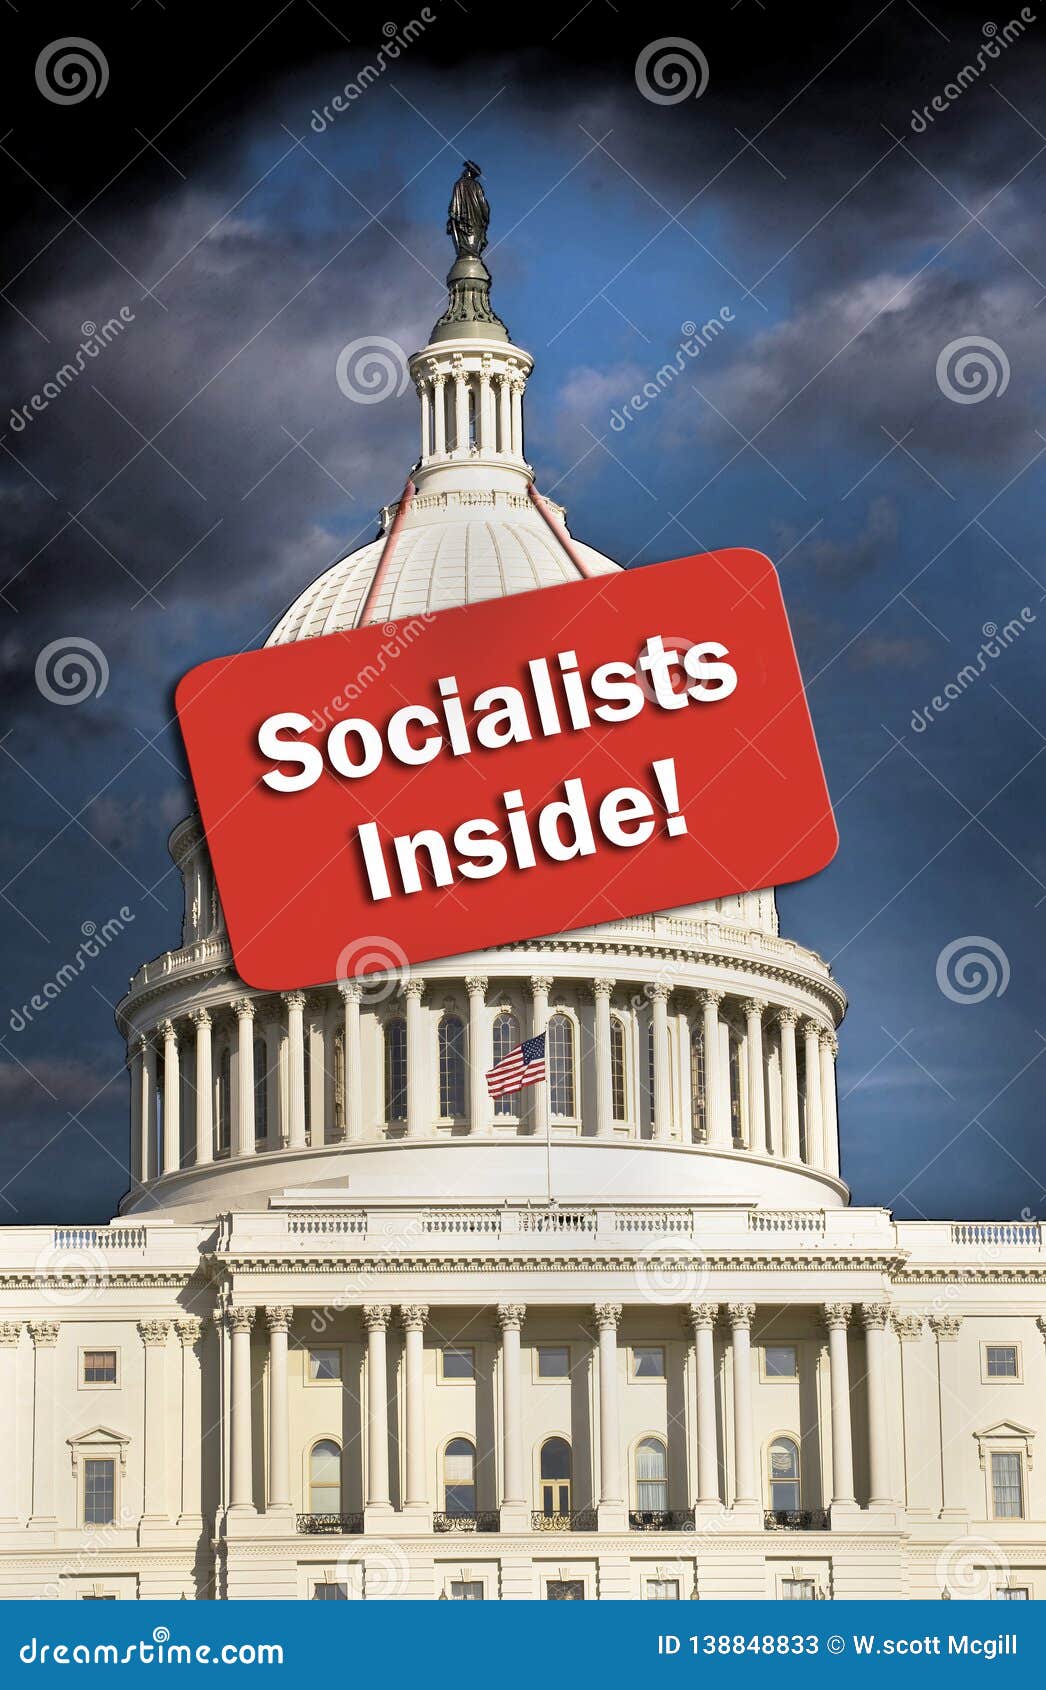 american socialists inside